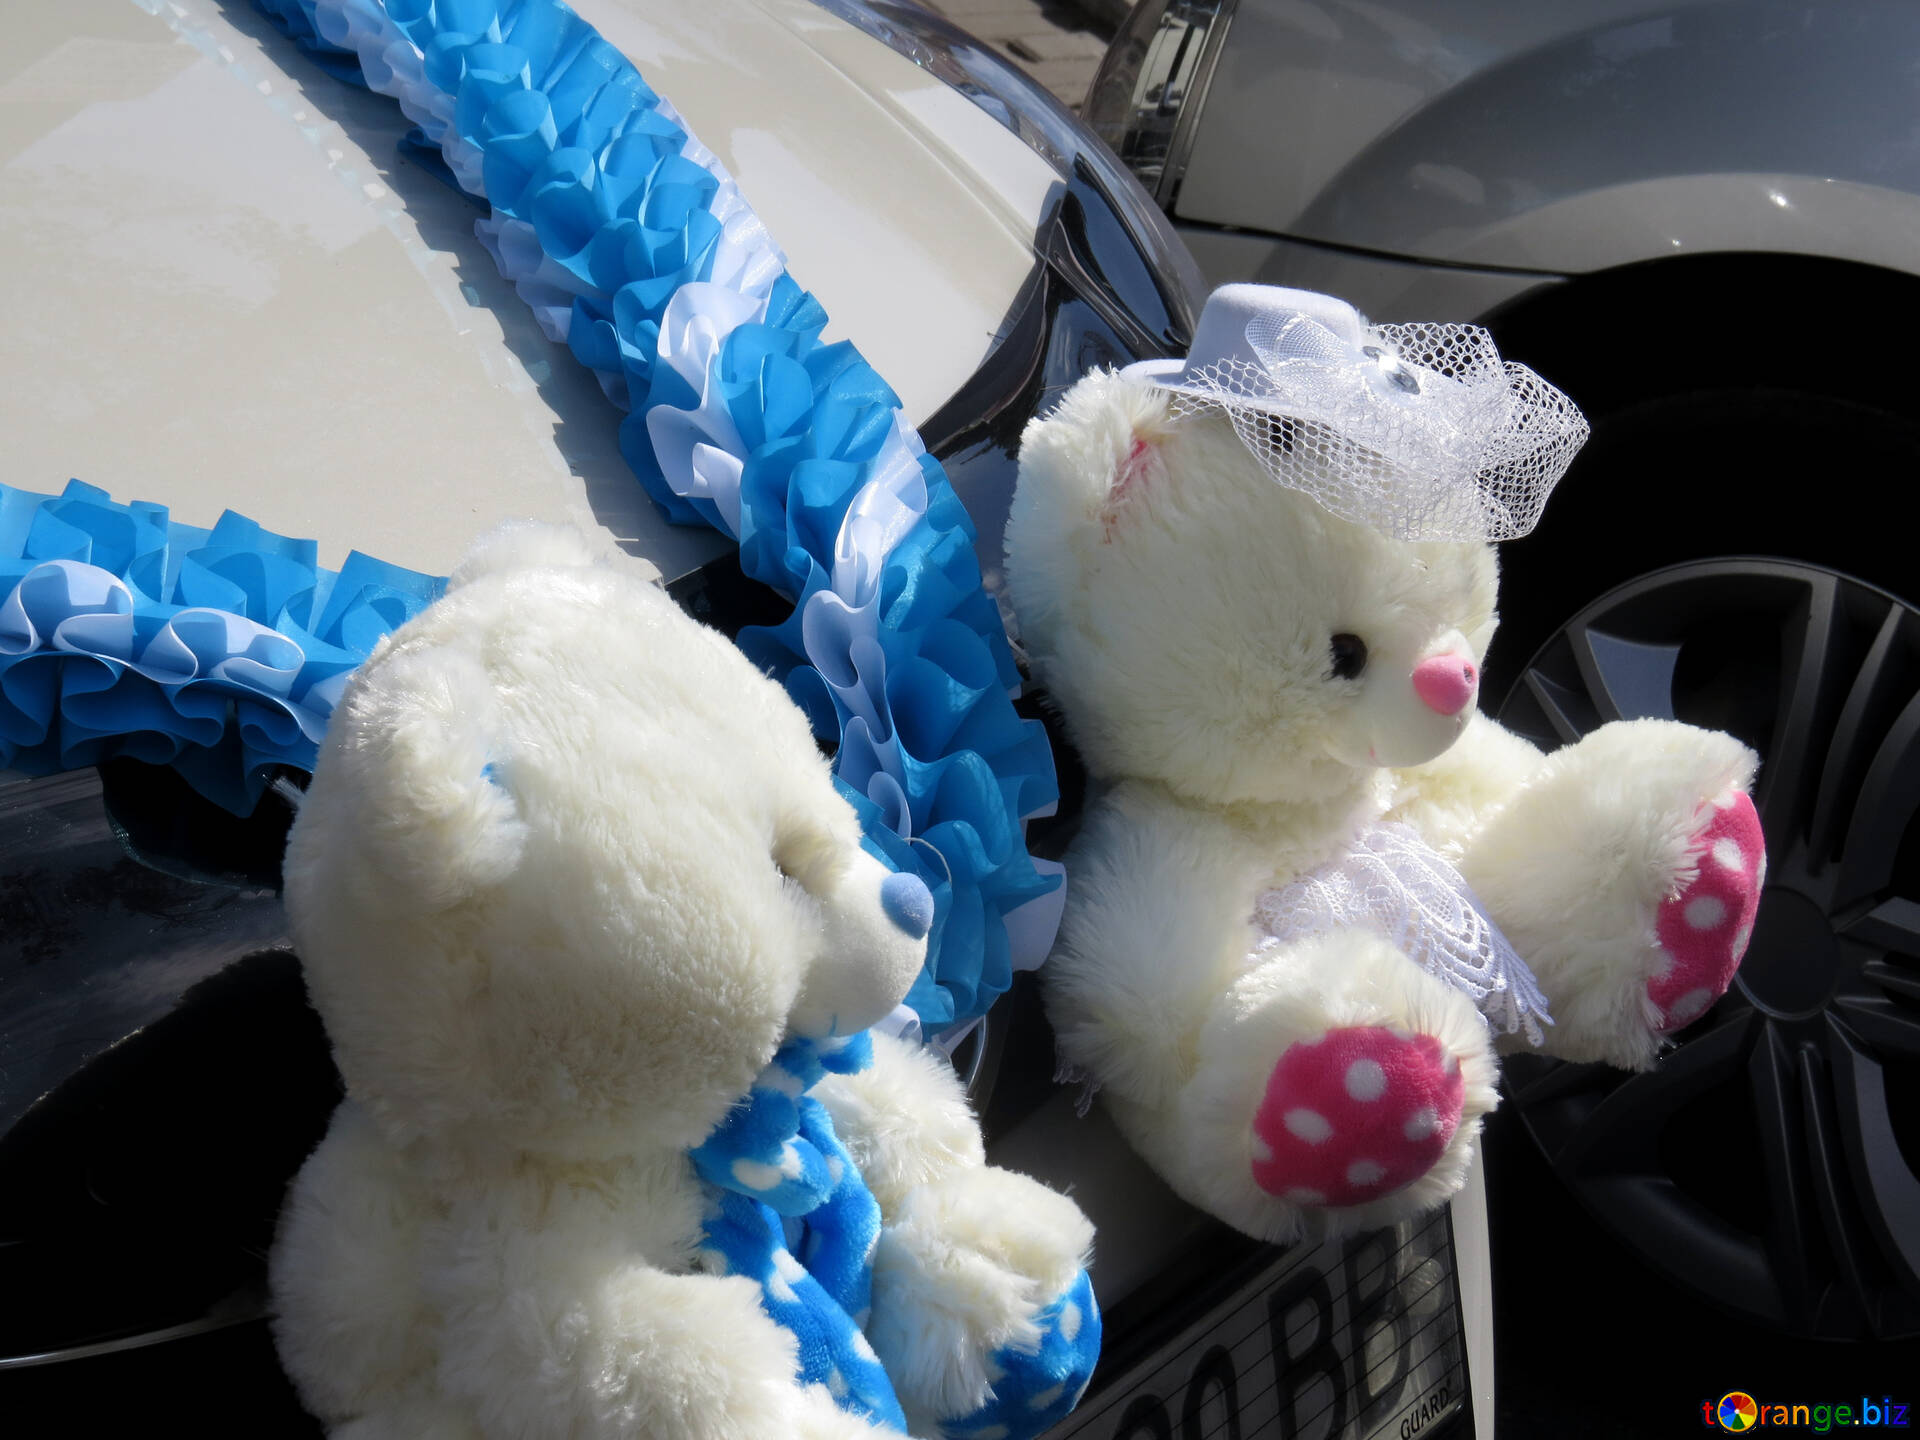 teddy bear for car decoration